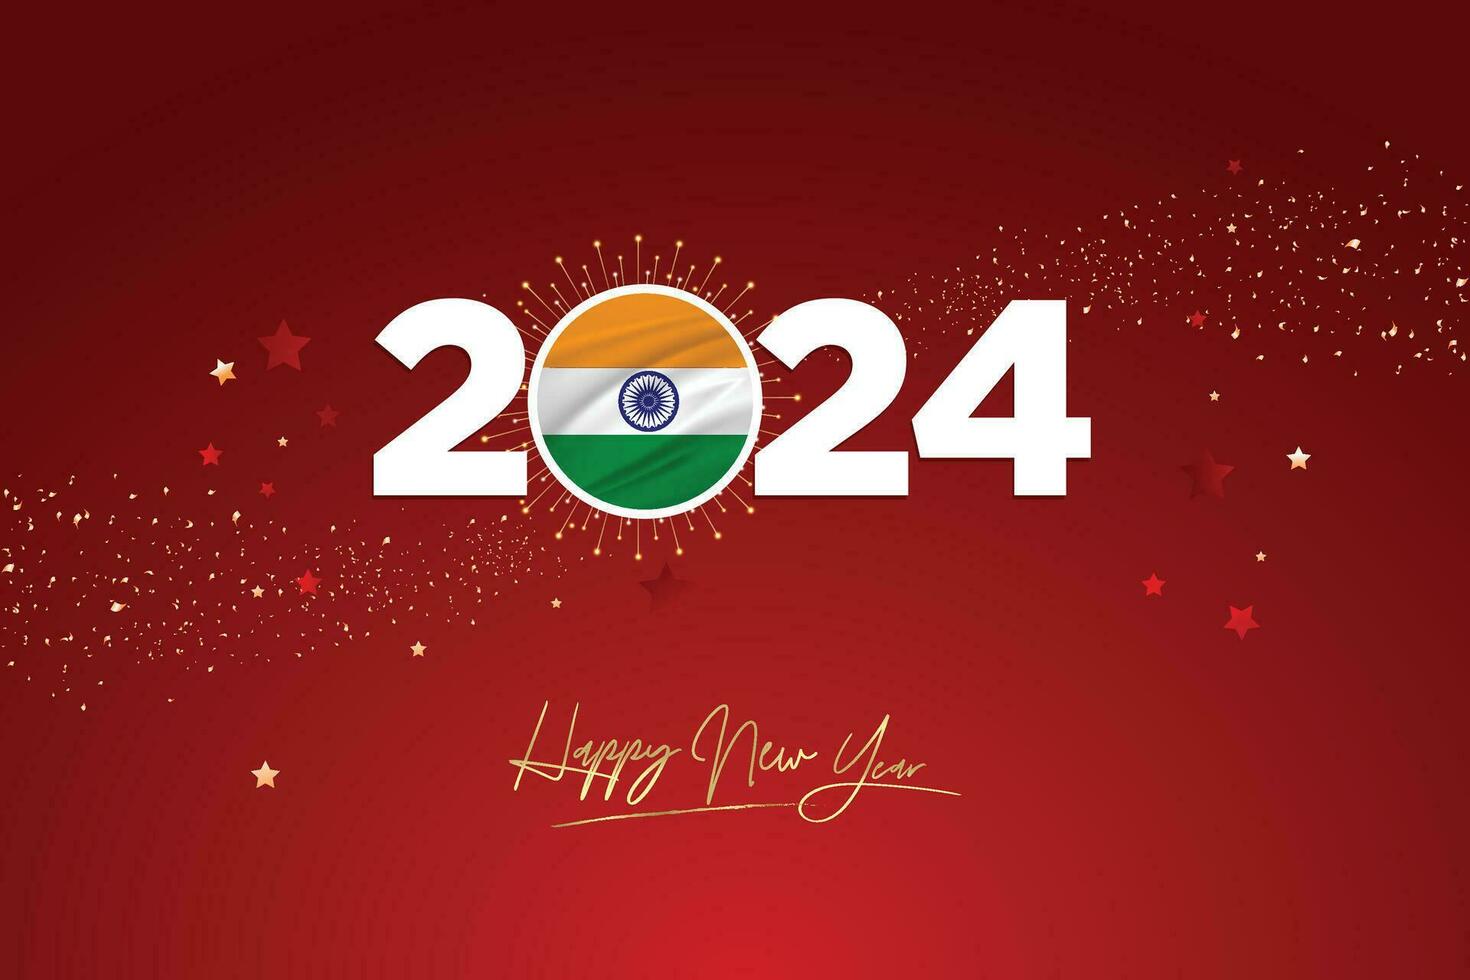 vistoso contento nuevo año festival diseño bandera, nuevo año 2024 logo con indio bandera en granate rojo papel picado y estrella fondo, calendario 2024, social medios de comunicación nuevo año bandera, enviar tarjeta, saludos vector